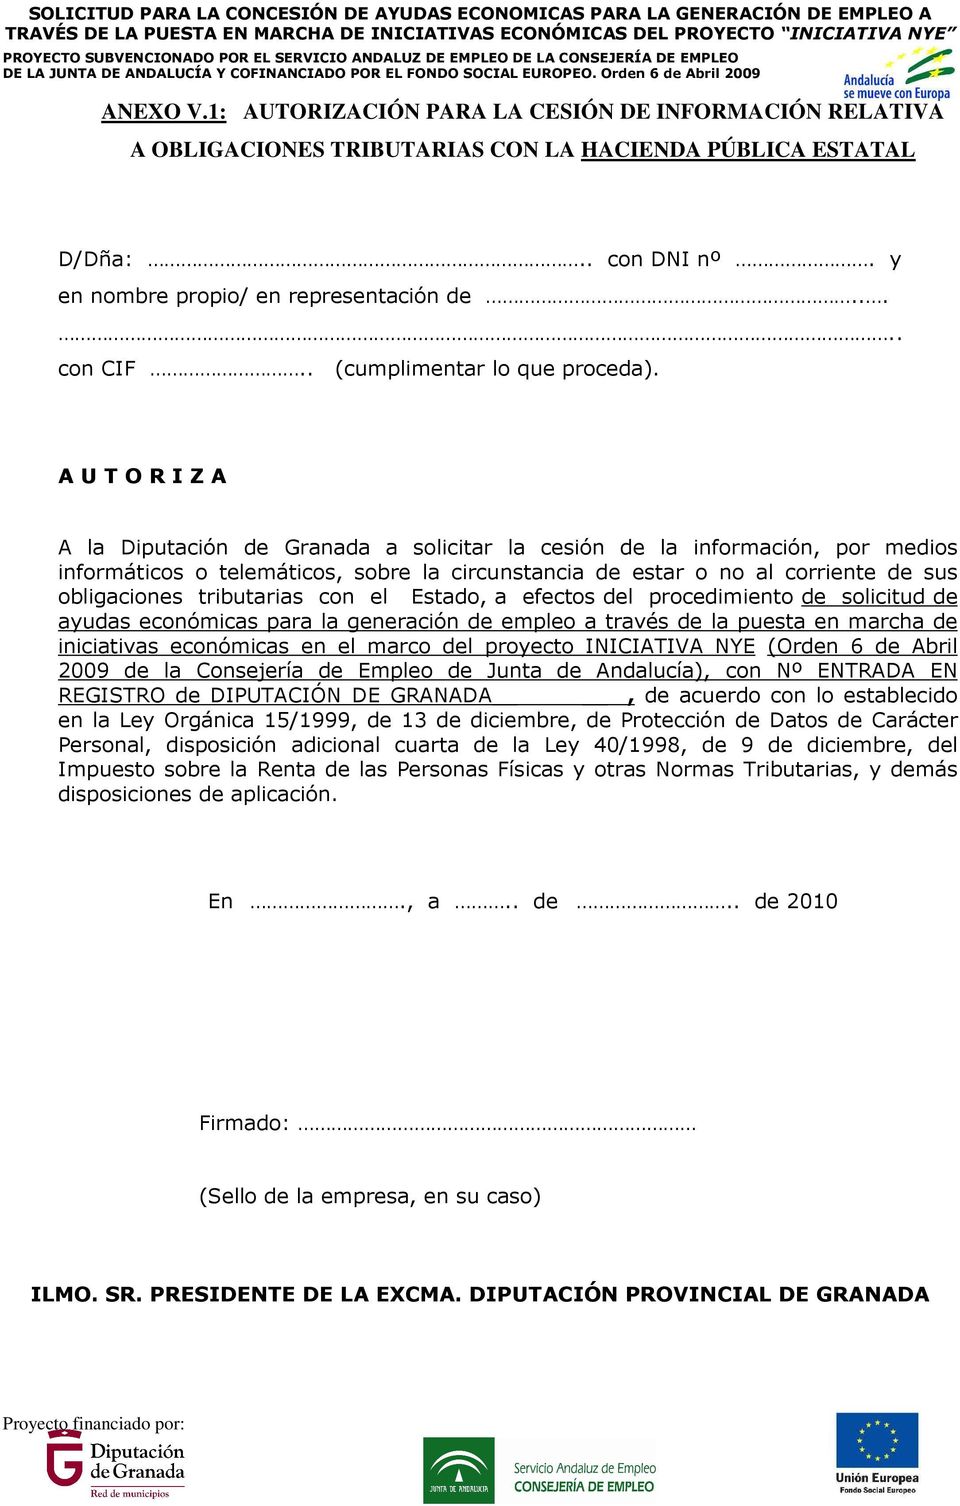 A U T O R I Z A A la Diputación de Granada a solicitar la cesión de la información, por medios informáticos o telemáticos, sobre la circunstancia de estar o no al corriente de sus obligaciones